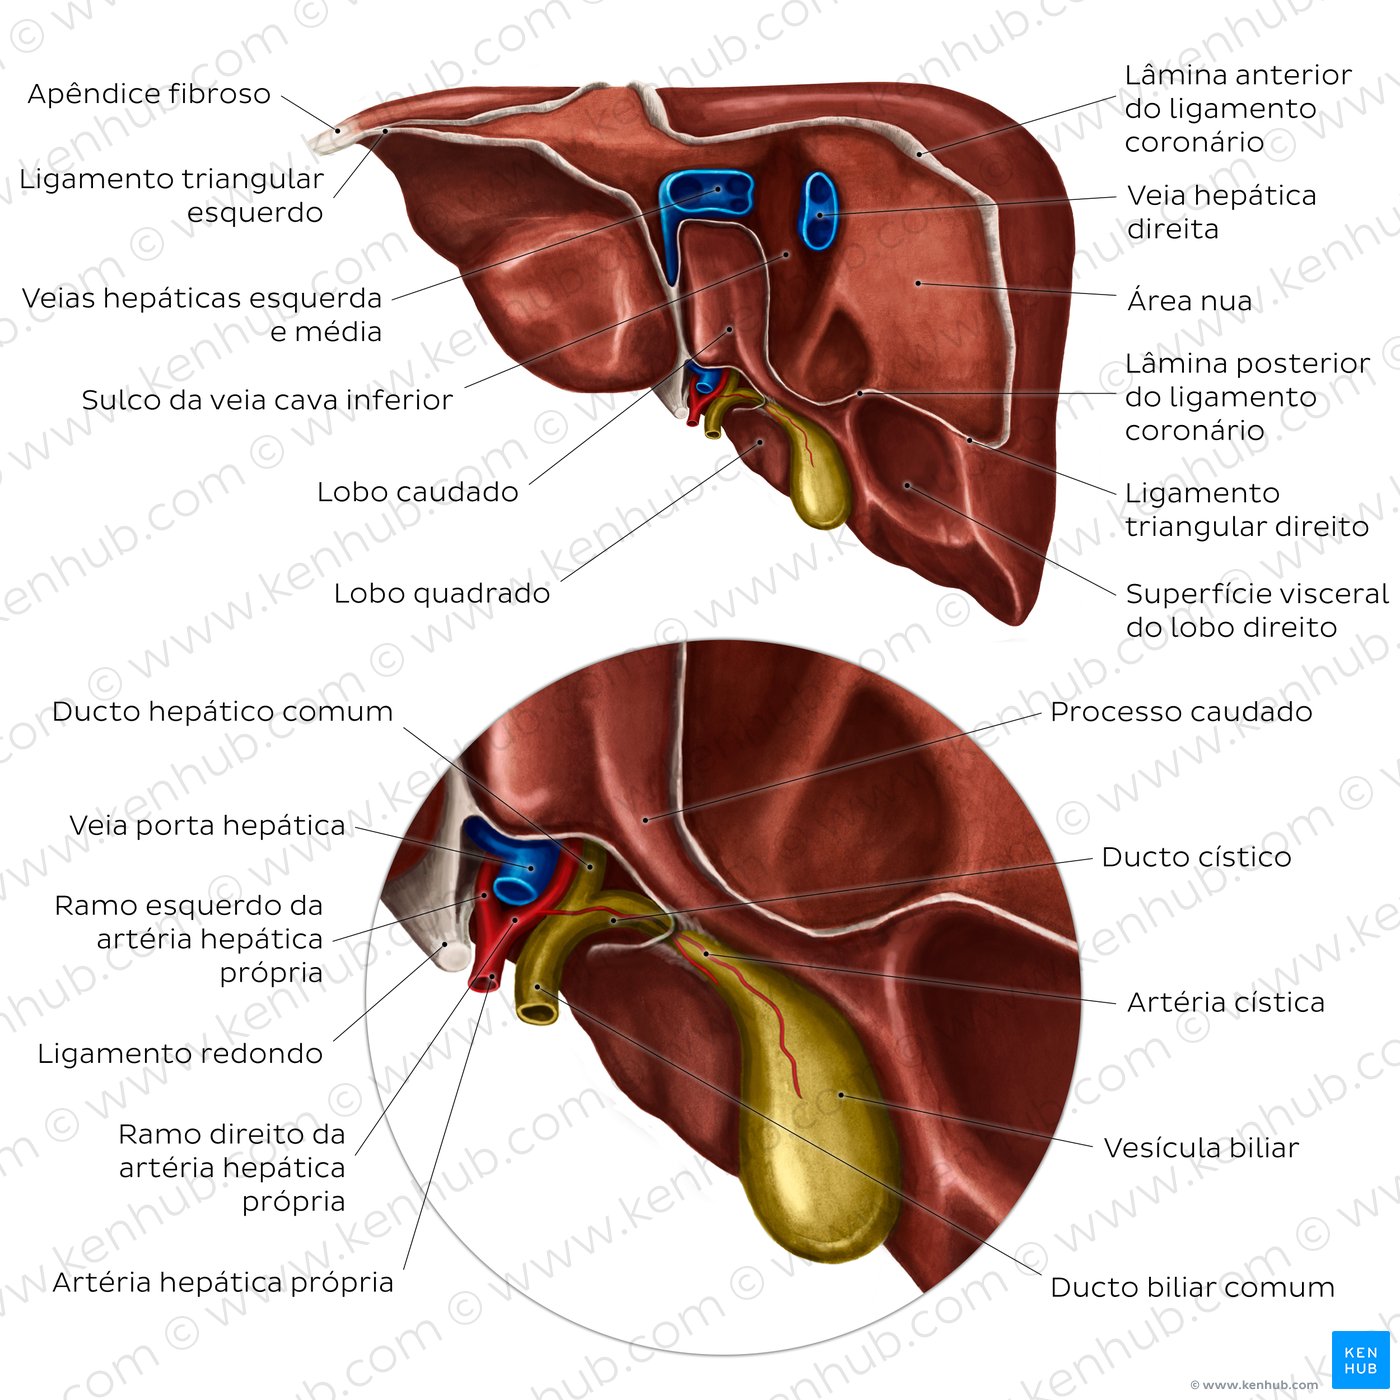 Anatomia do fígado - vista posterior